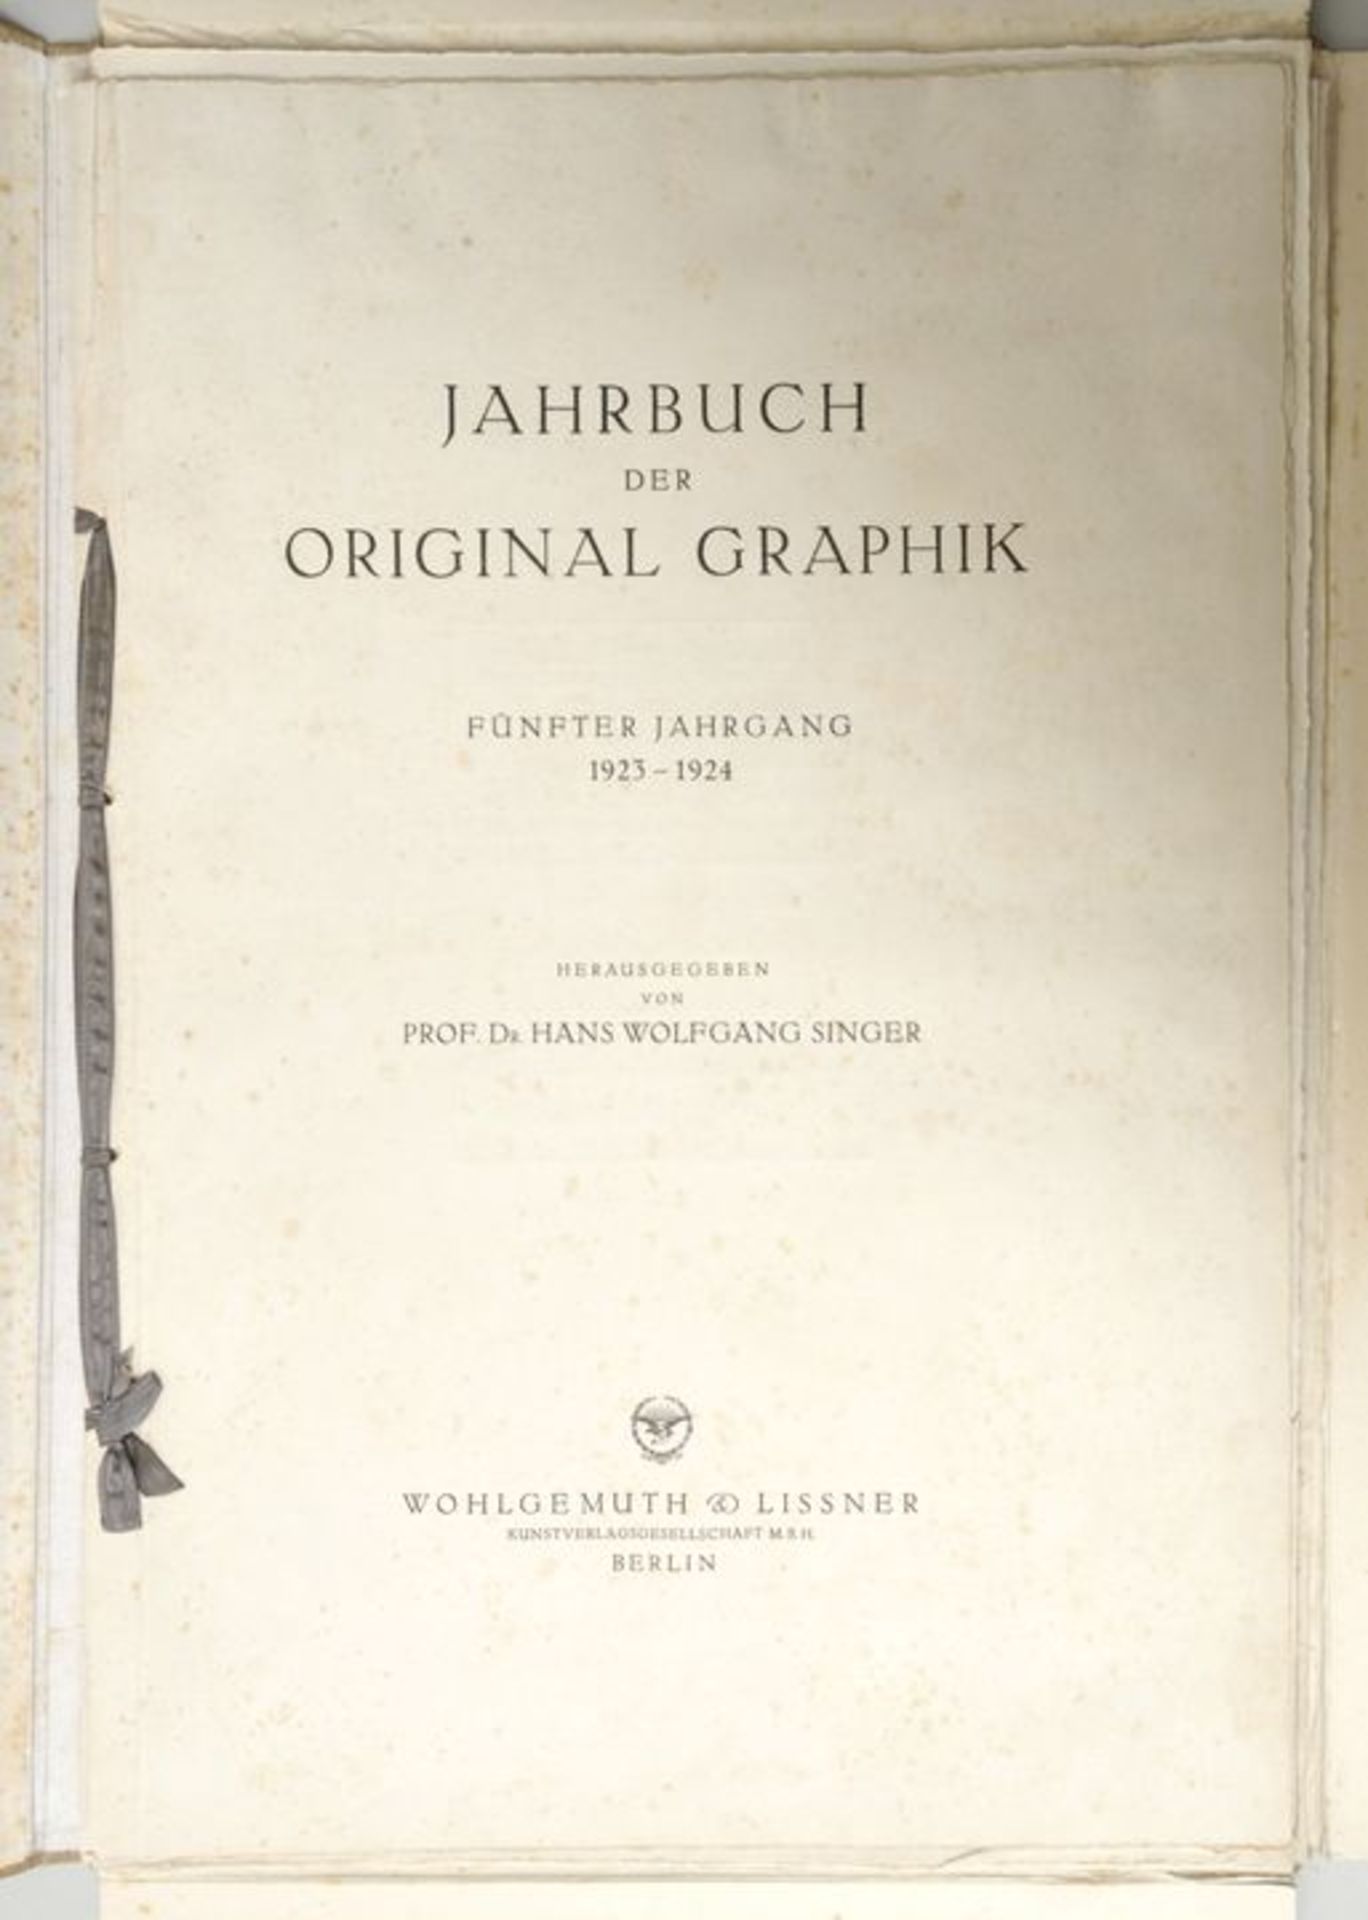 Jahrbuch der Original Graphik